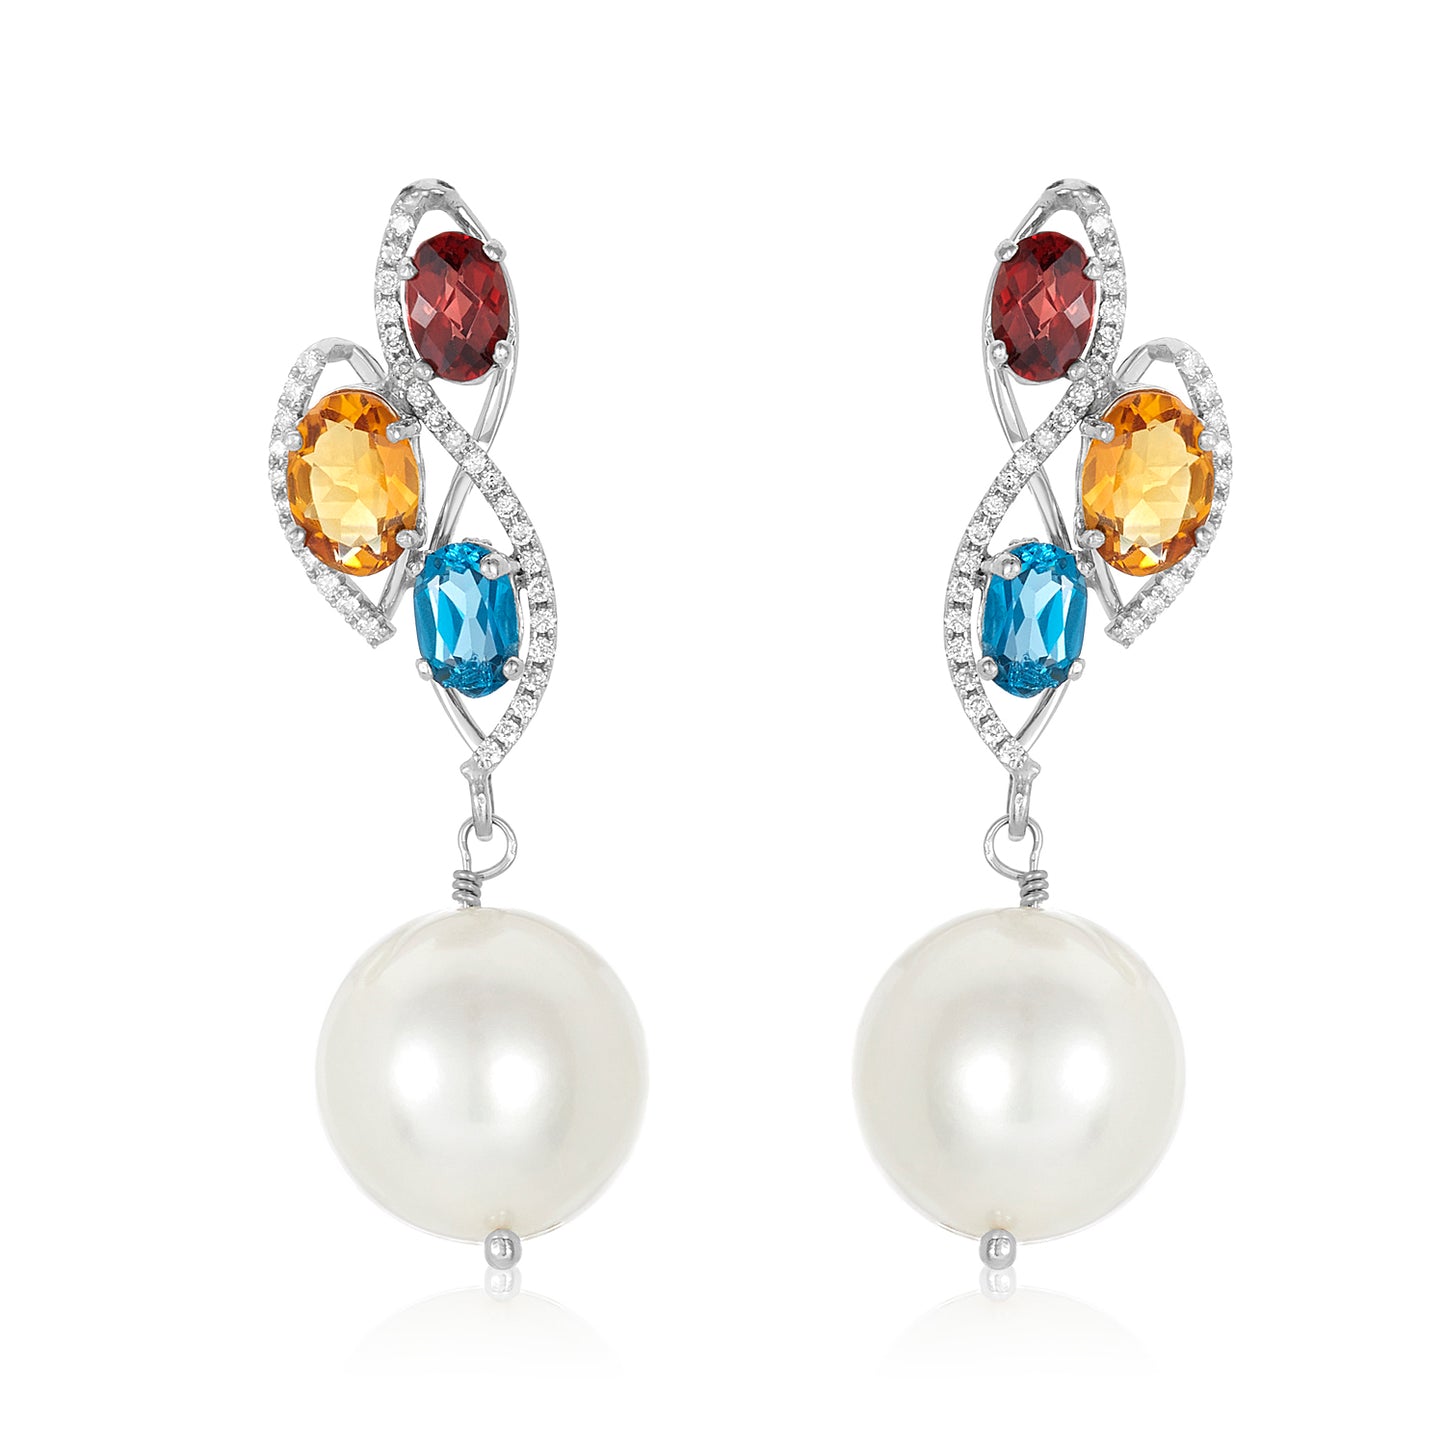 Triple Gemstone Pearl Earrings